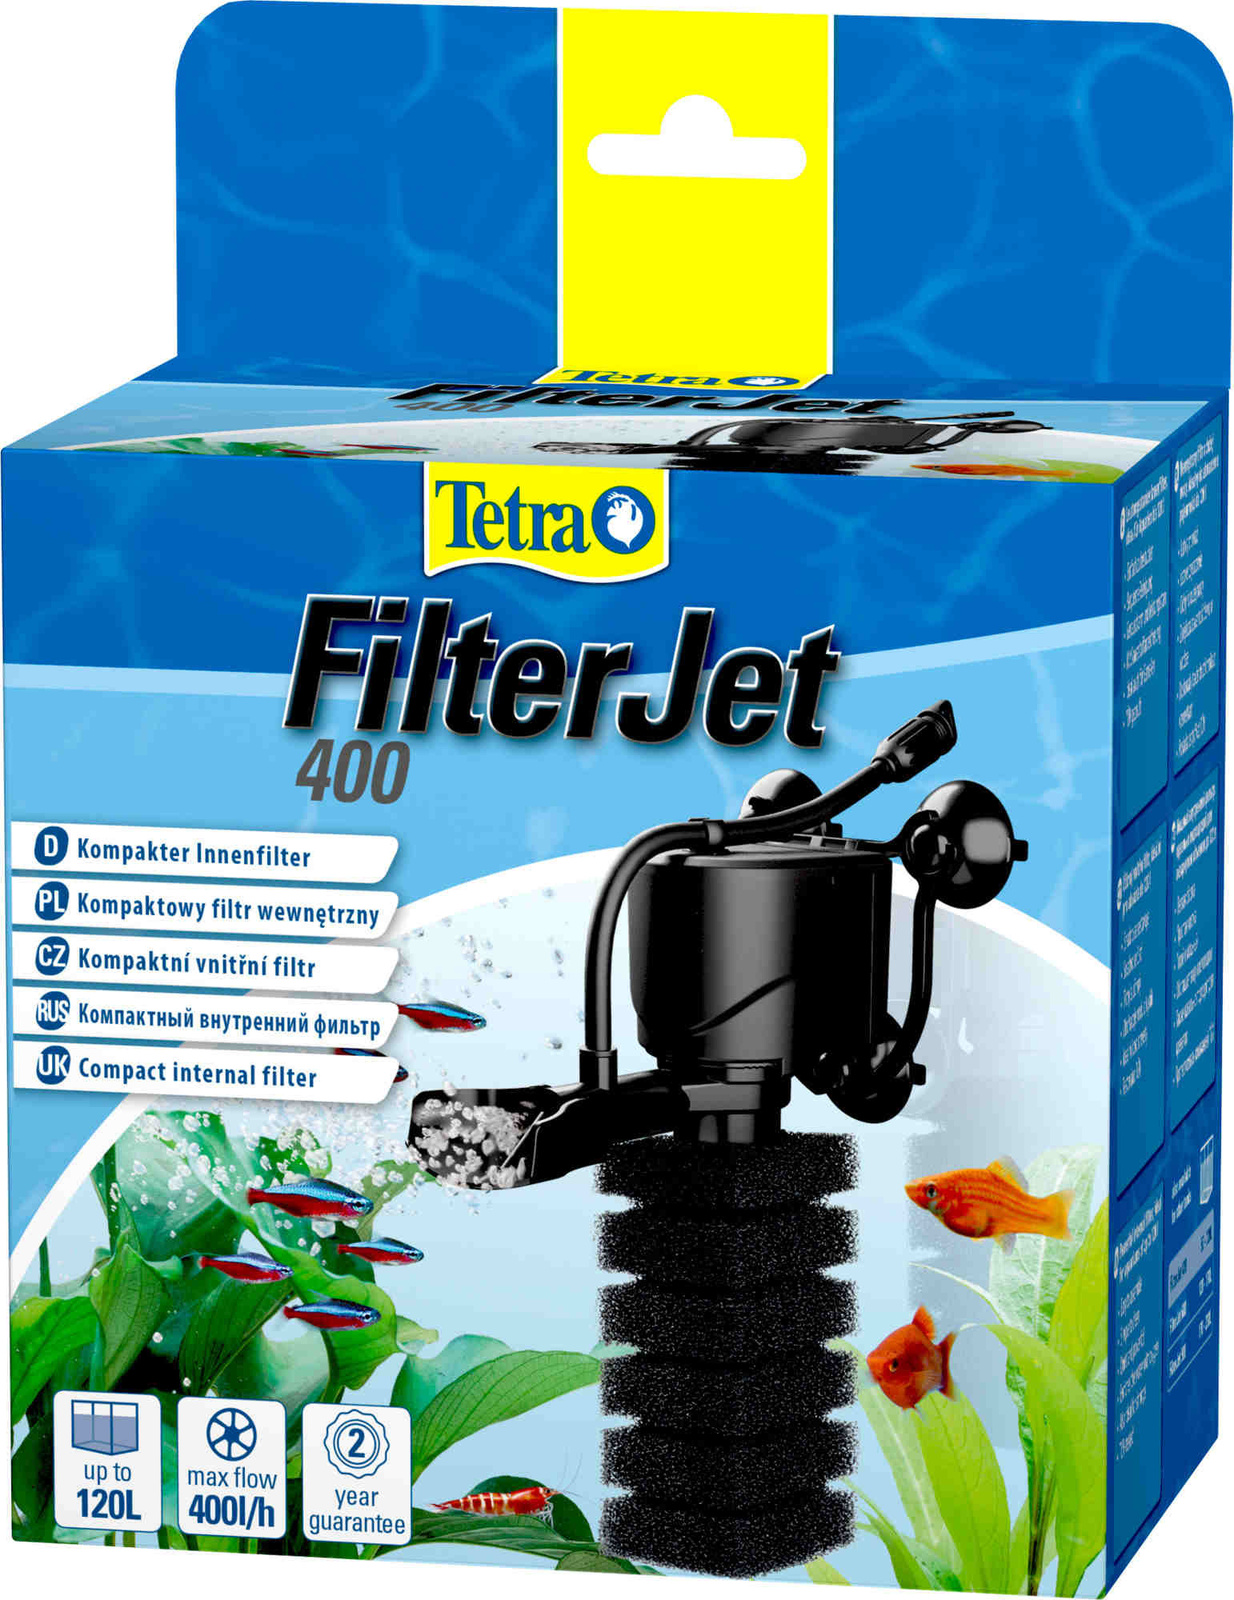 Tetra (оборудование) Tetra (оборудование) внутренний фильтр FilterJet 400, для аквариумов 50 – 120л (460 г) tetra оборудование tetra оборудование компрессор tetratec aps 100 для аквариумов 50 100 л 375 г